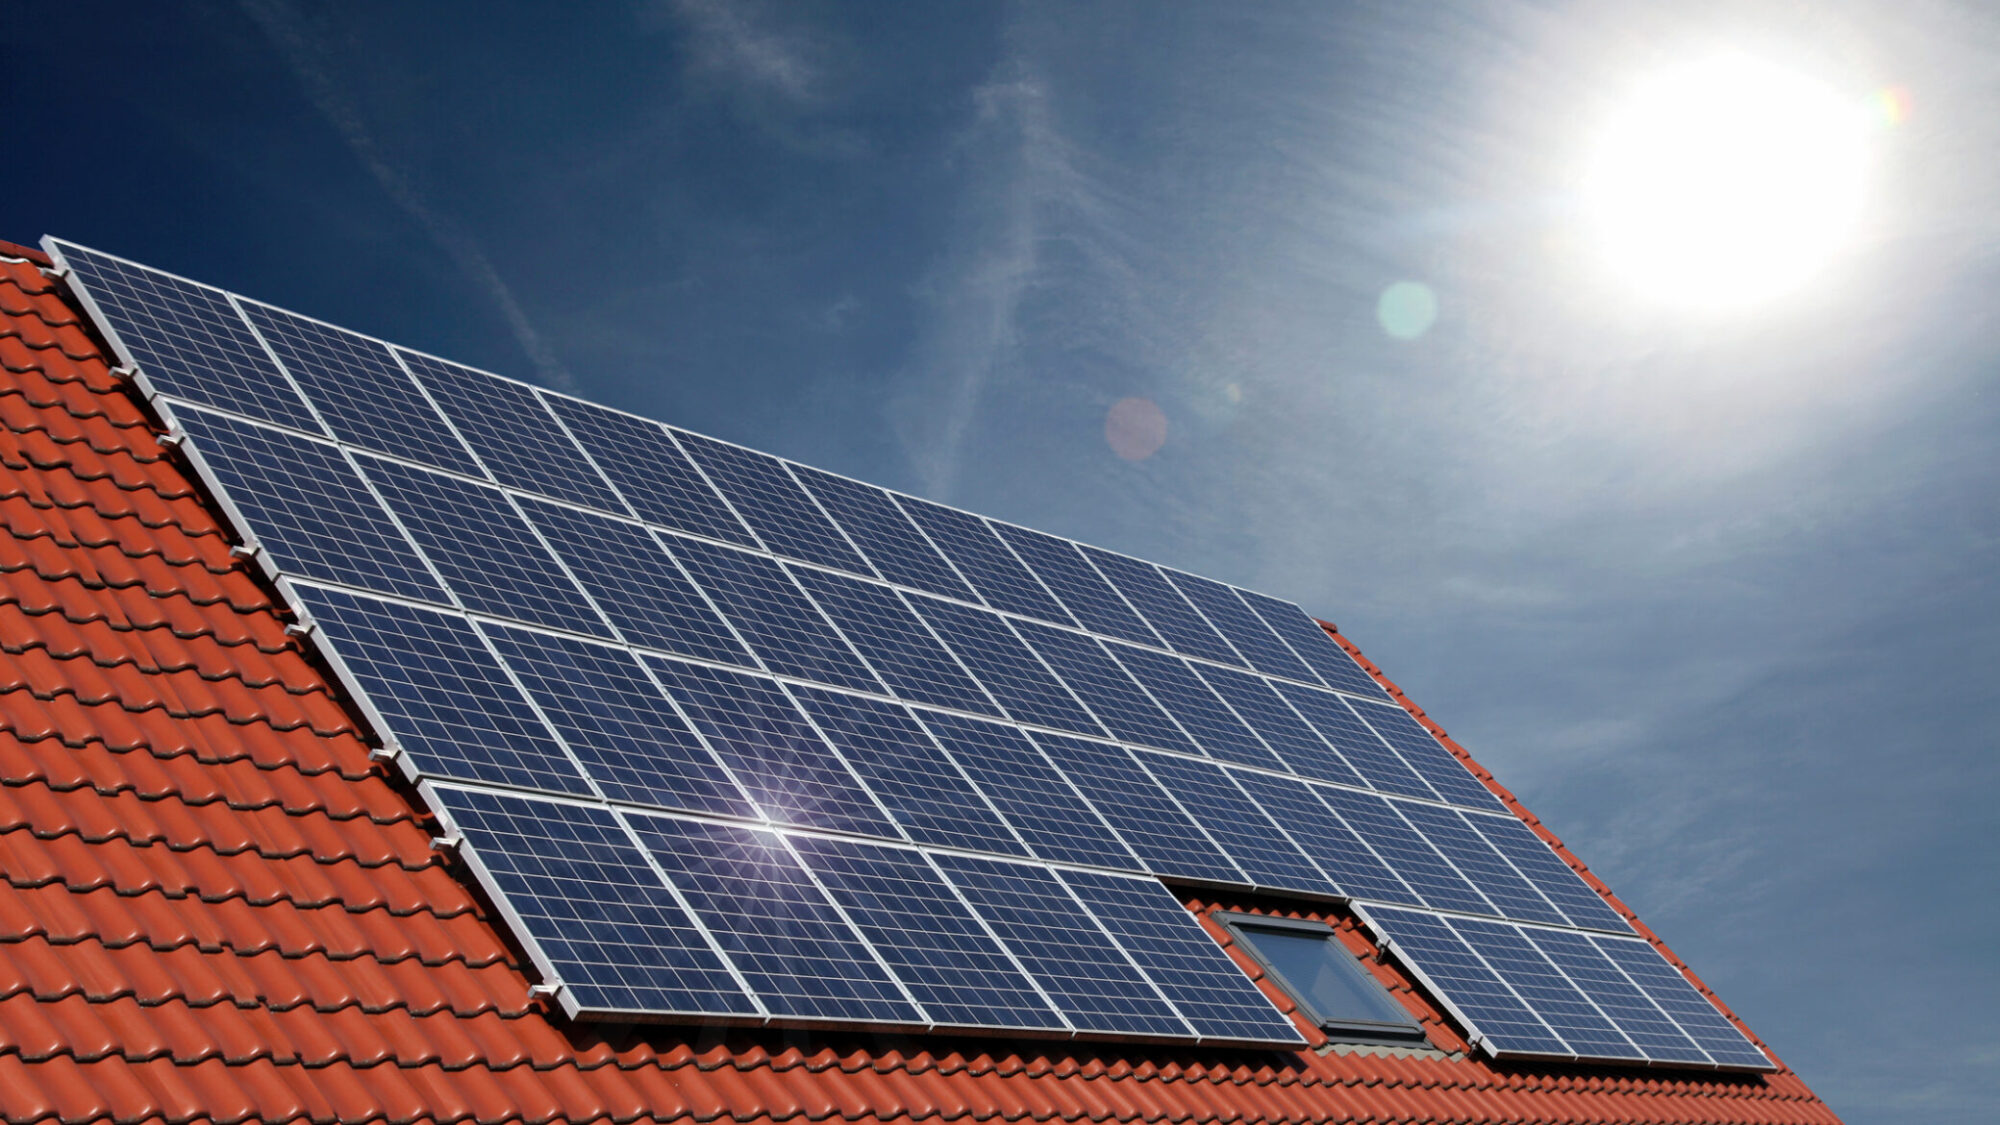 Painéis solares, quando a poupança e a energia se aliam ao ambiente